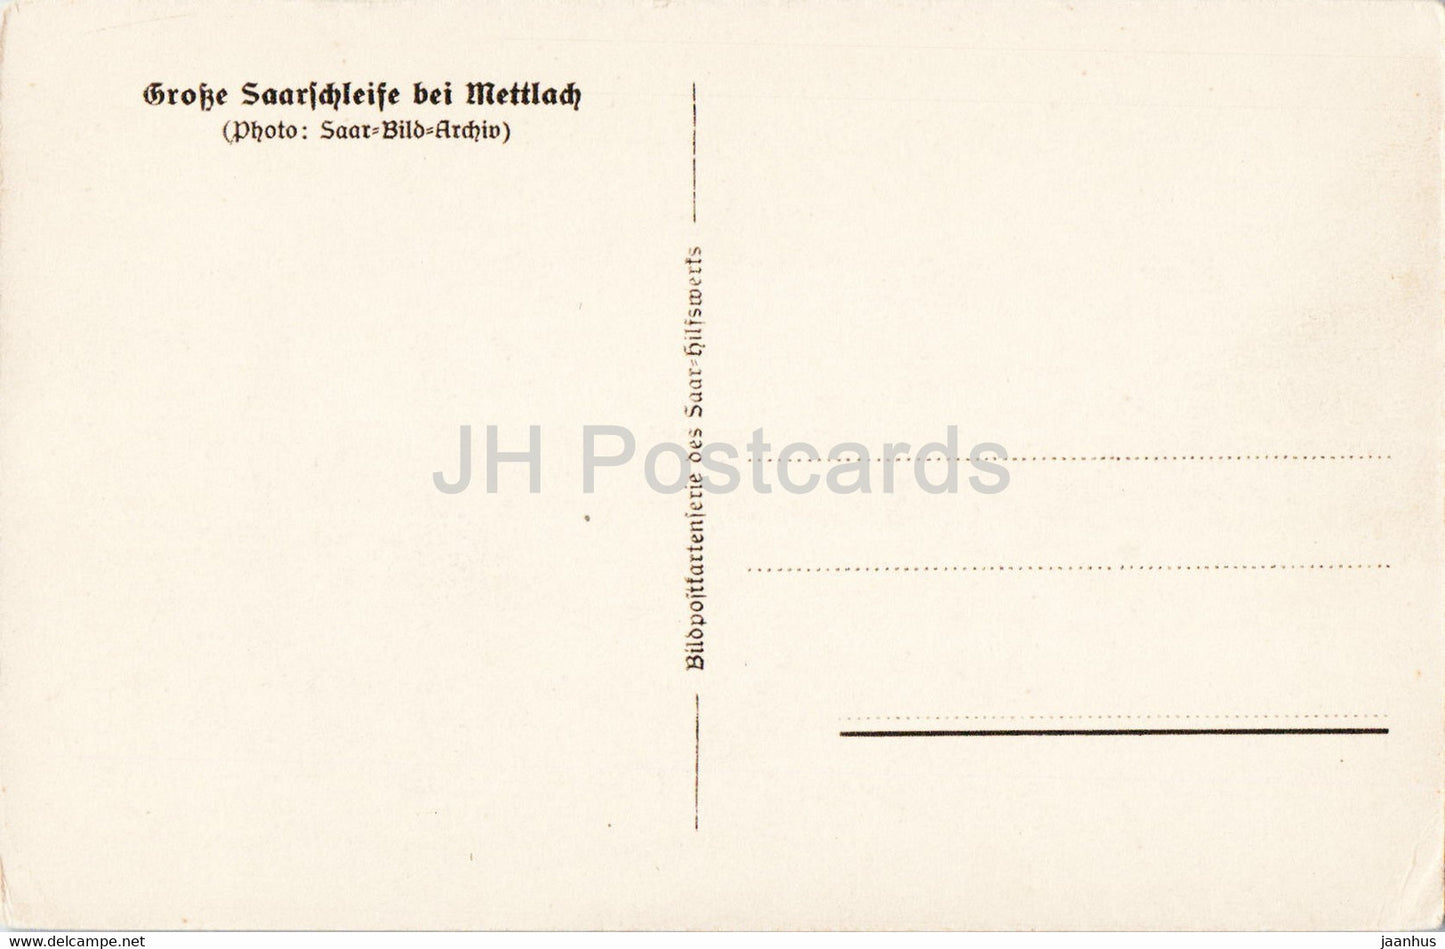 Große Saarschleife bei Mettlach - alte Postkarte - Deutschland - unbenutzt